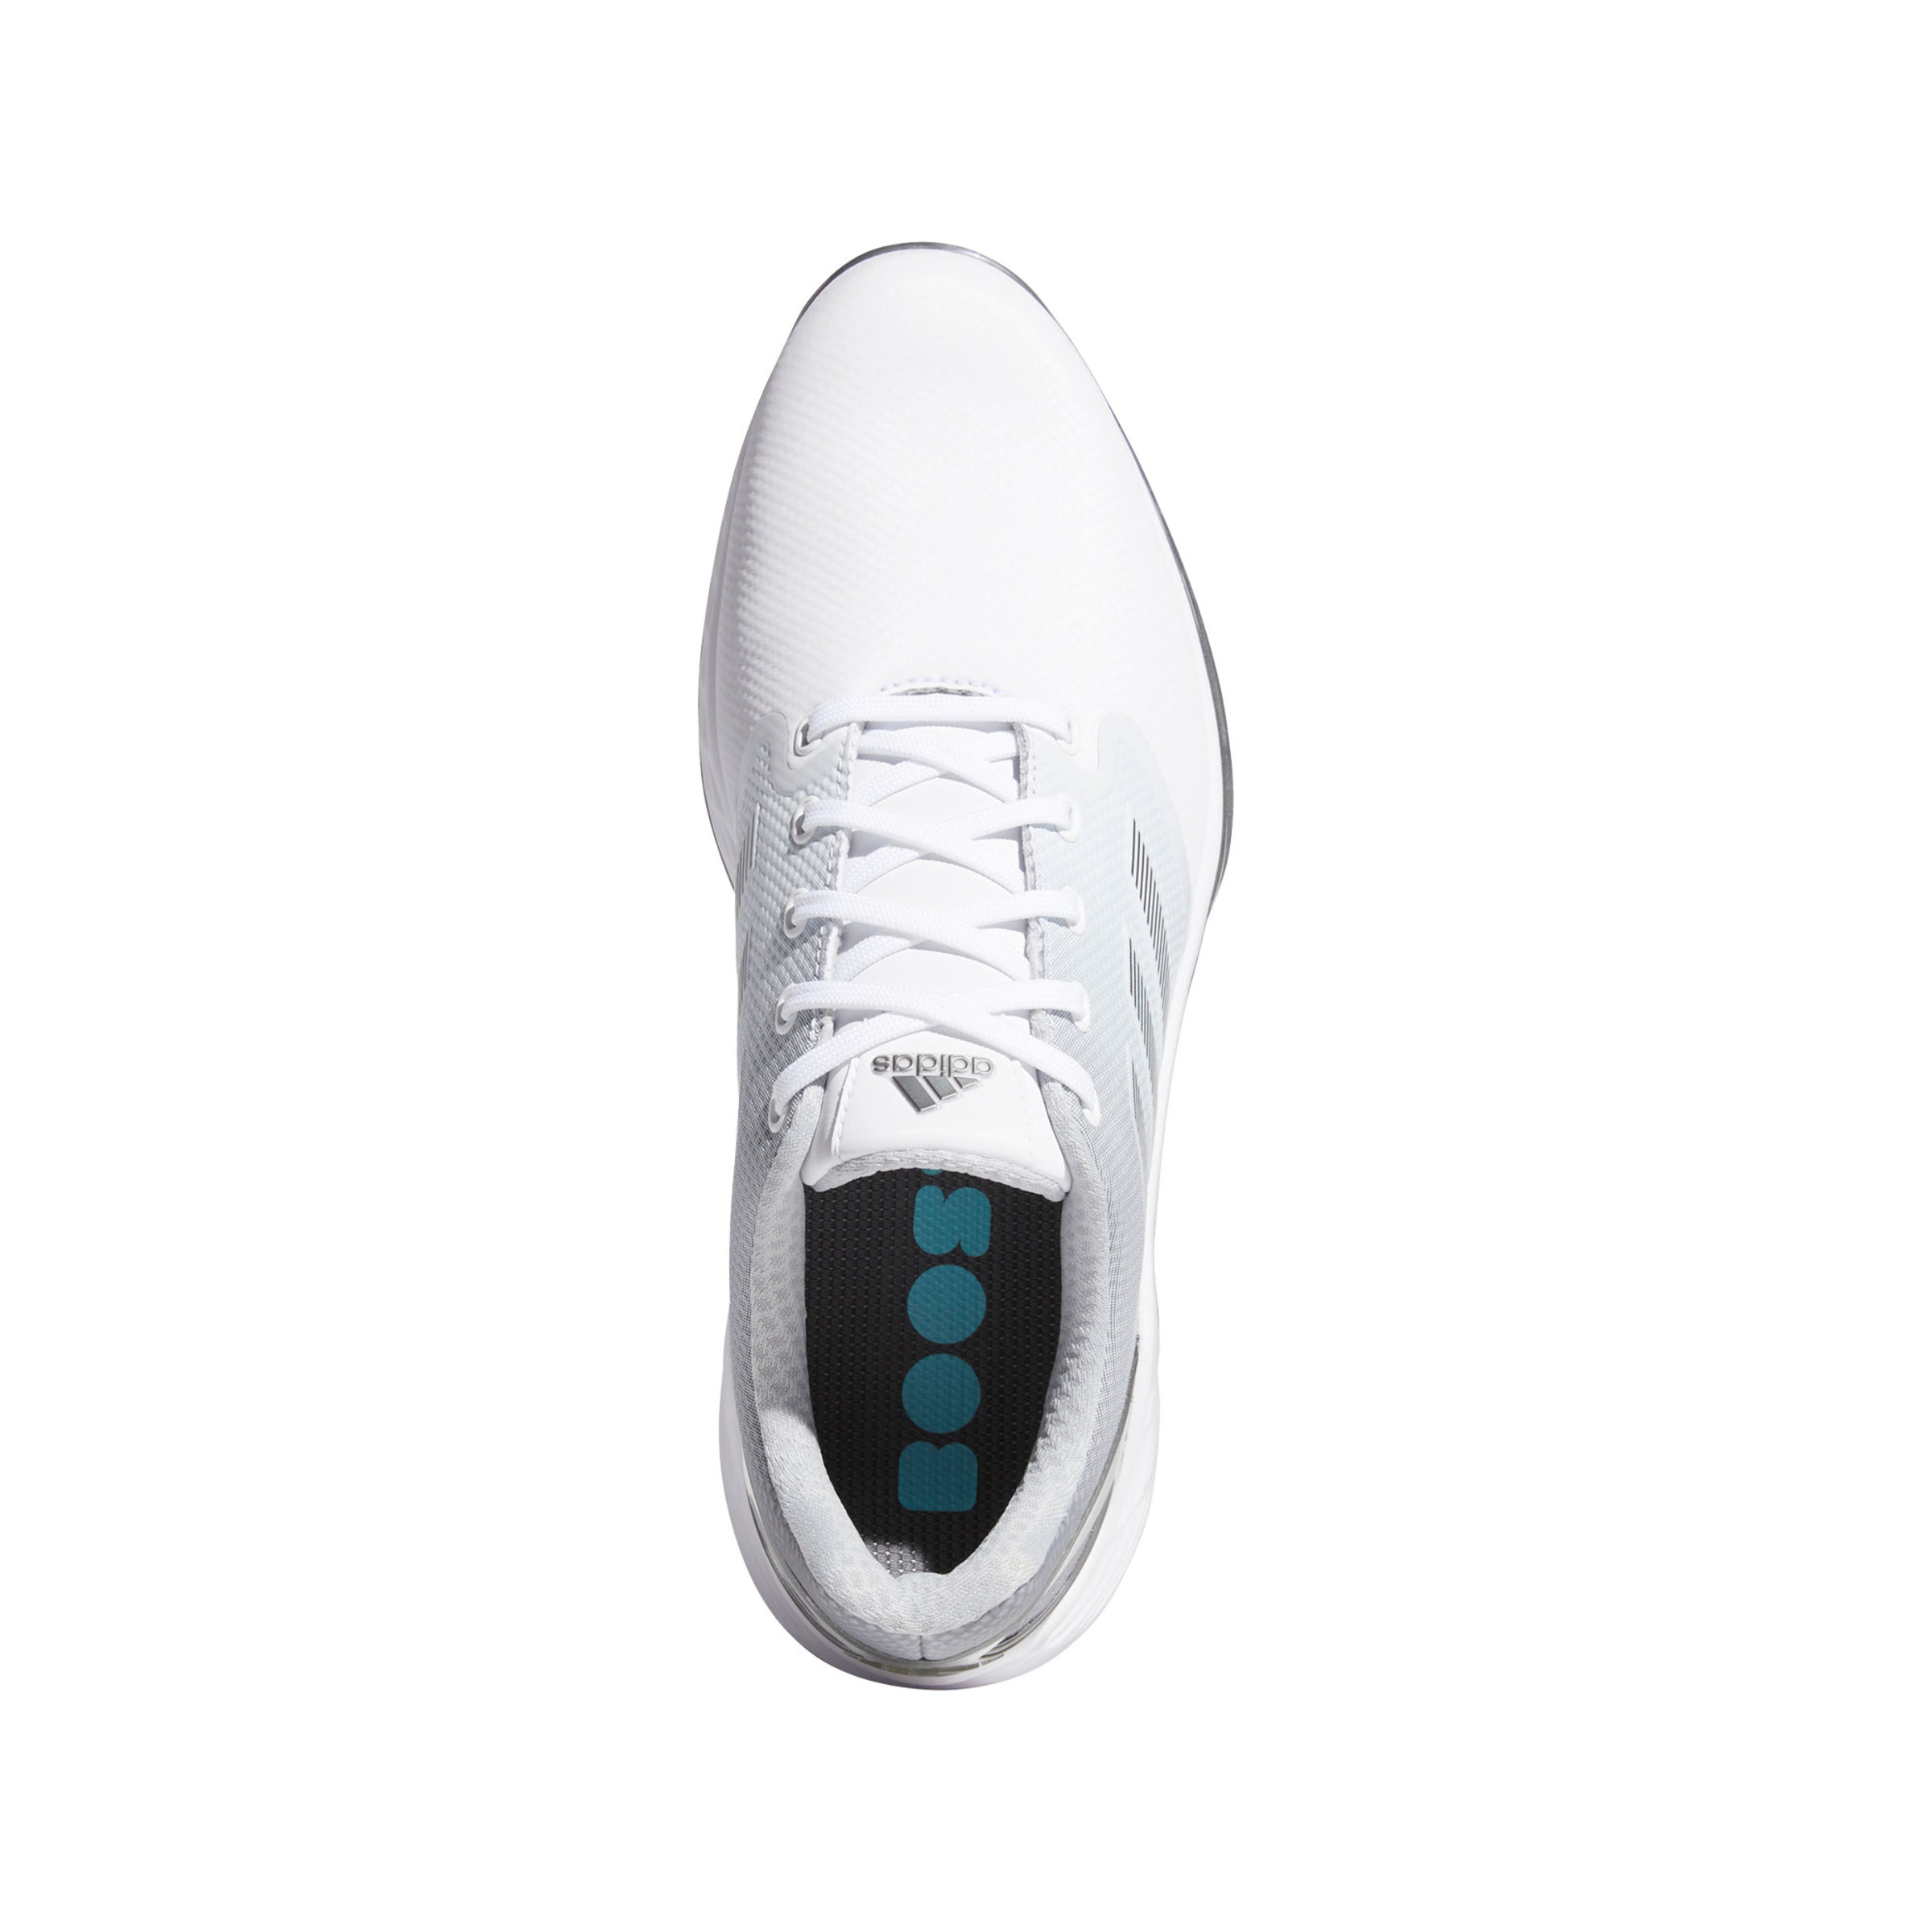 Adidas ZG 21 White/Silver/Grey Herren